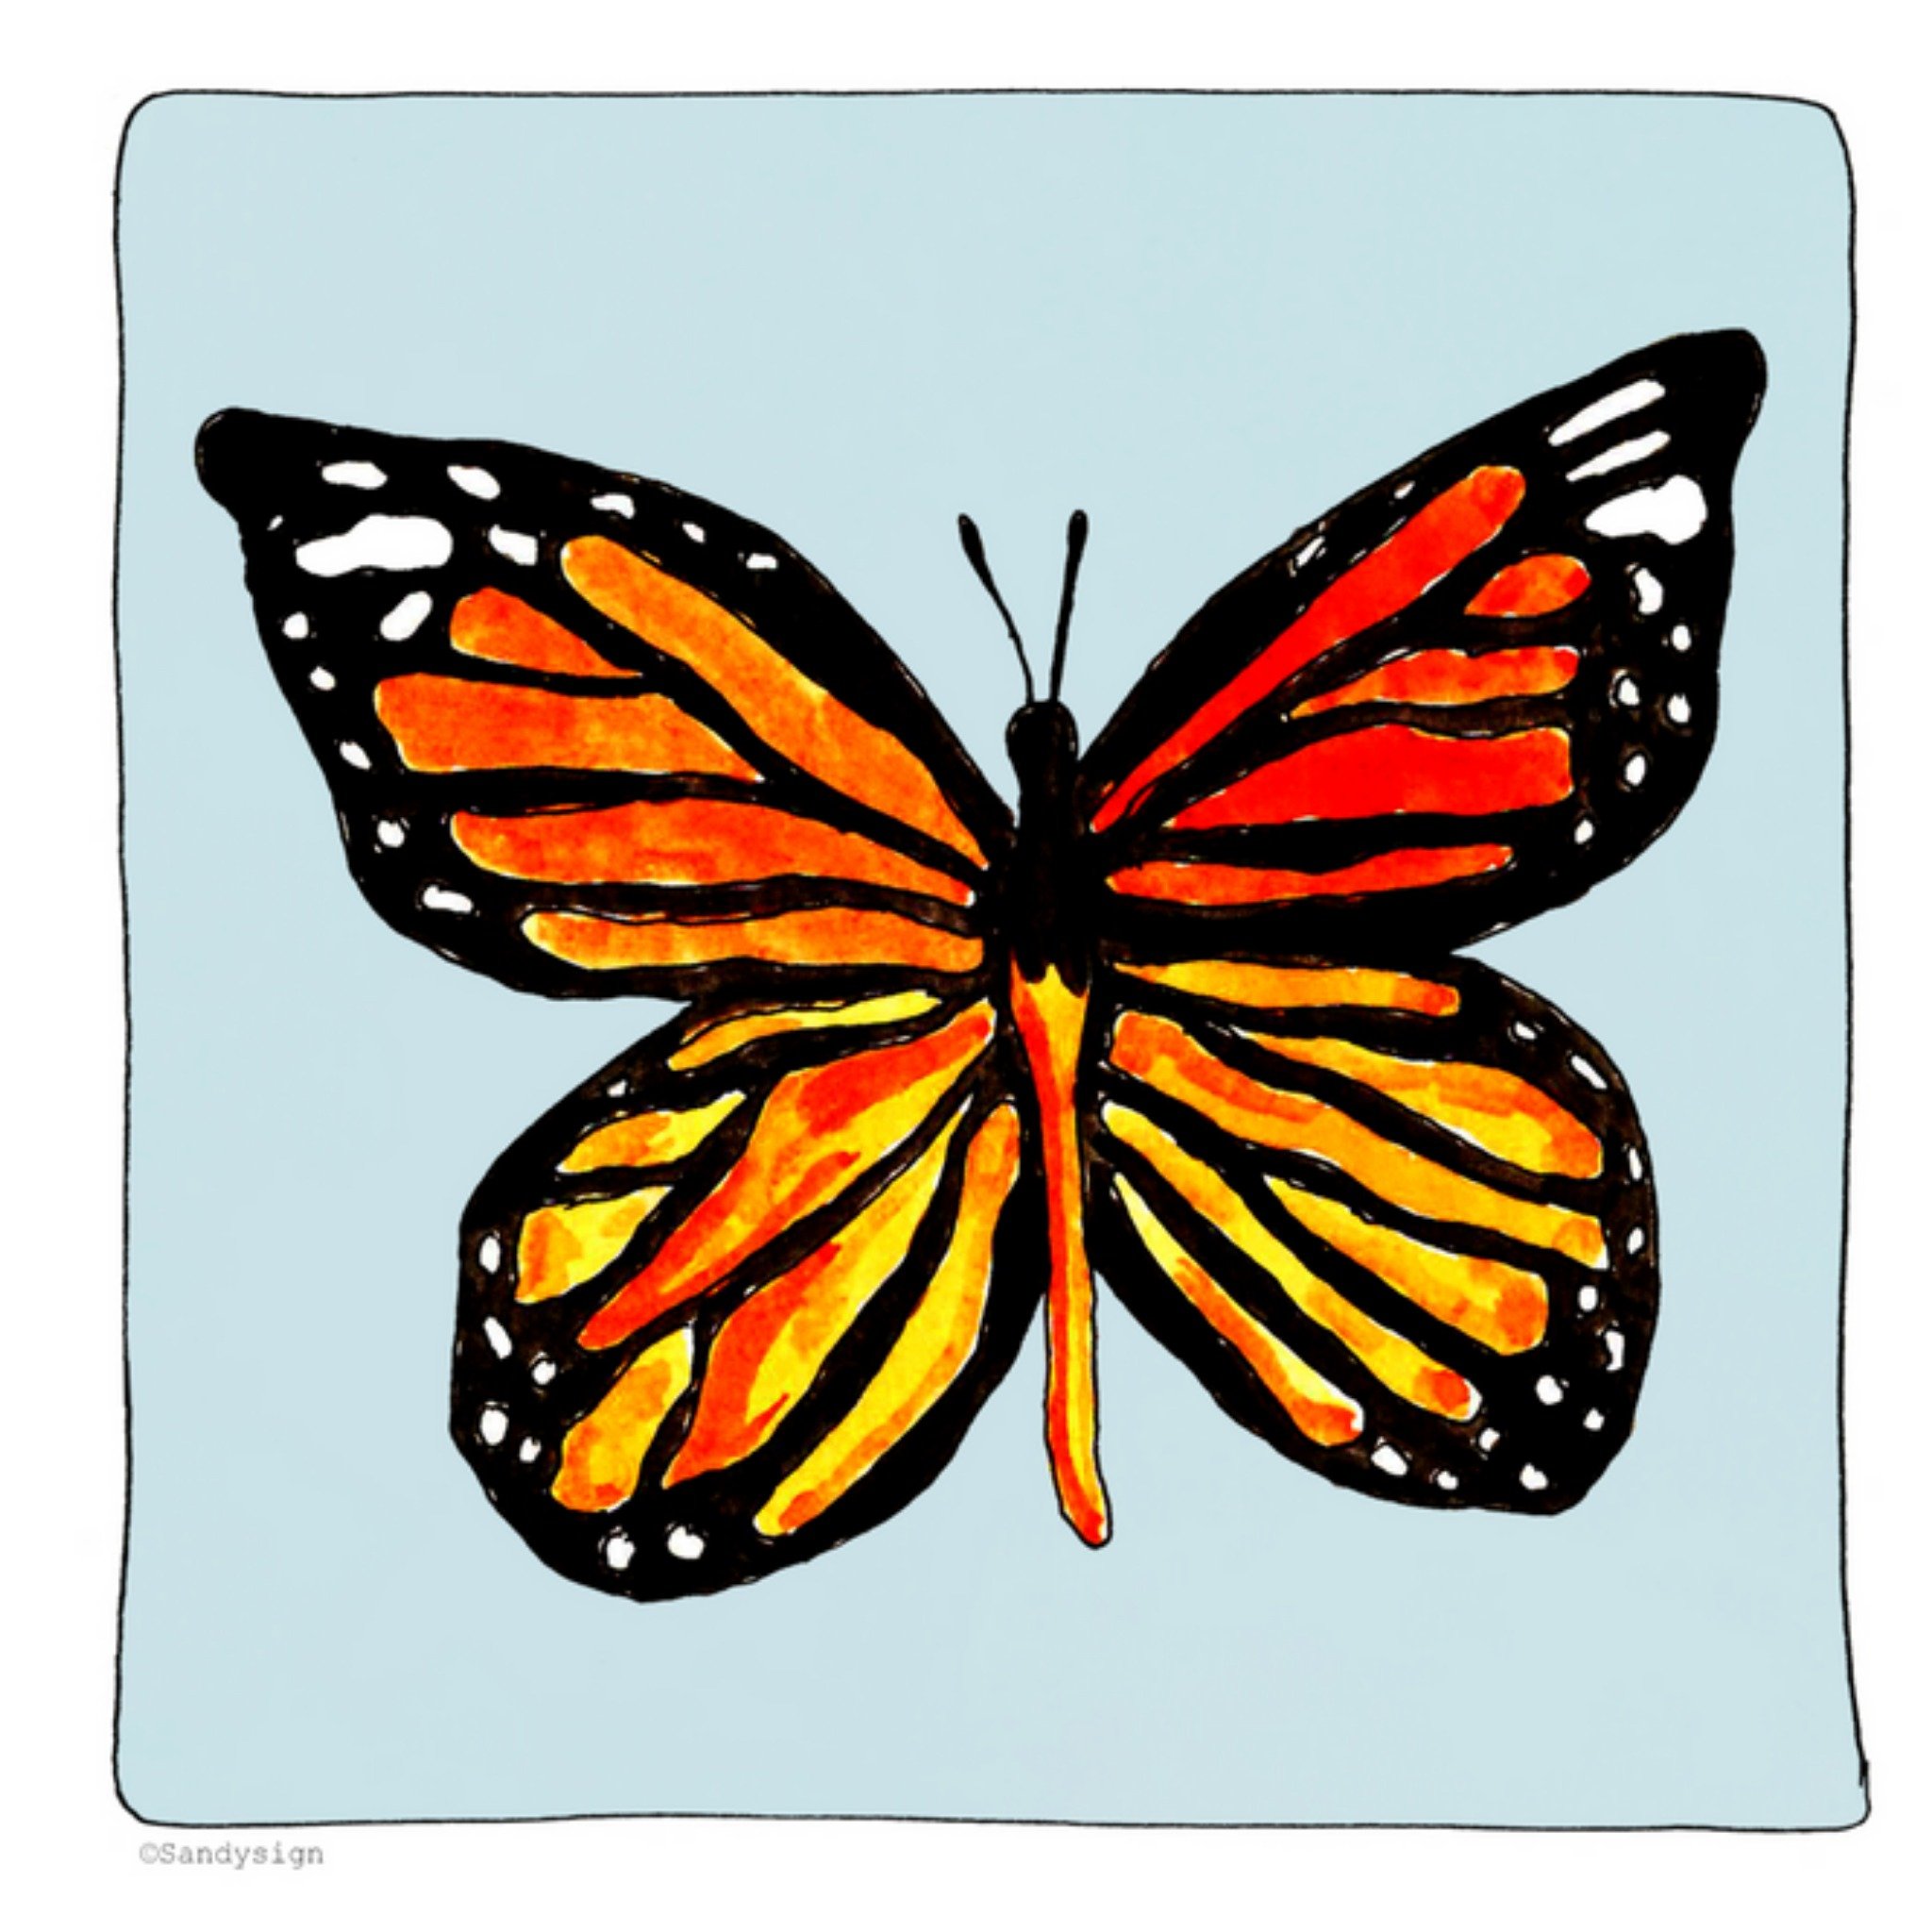 Sandysign - Condoleancekaart - vlinder